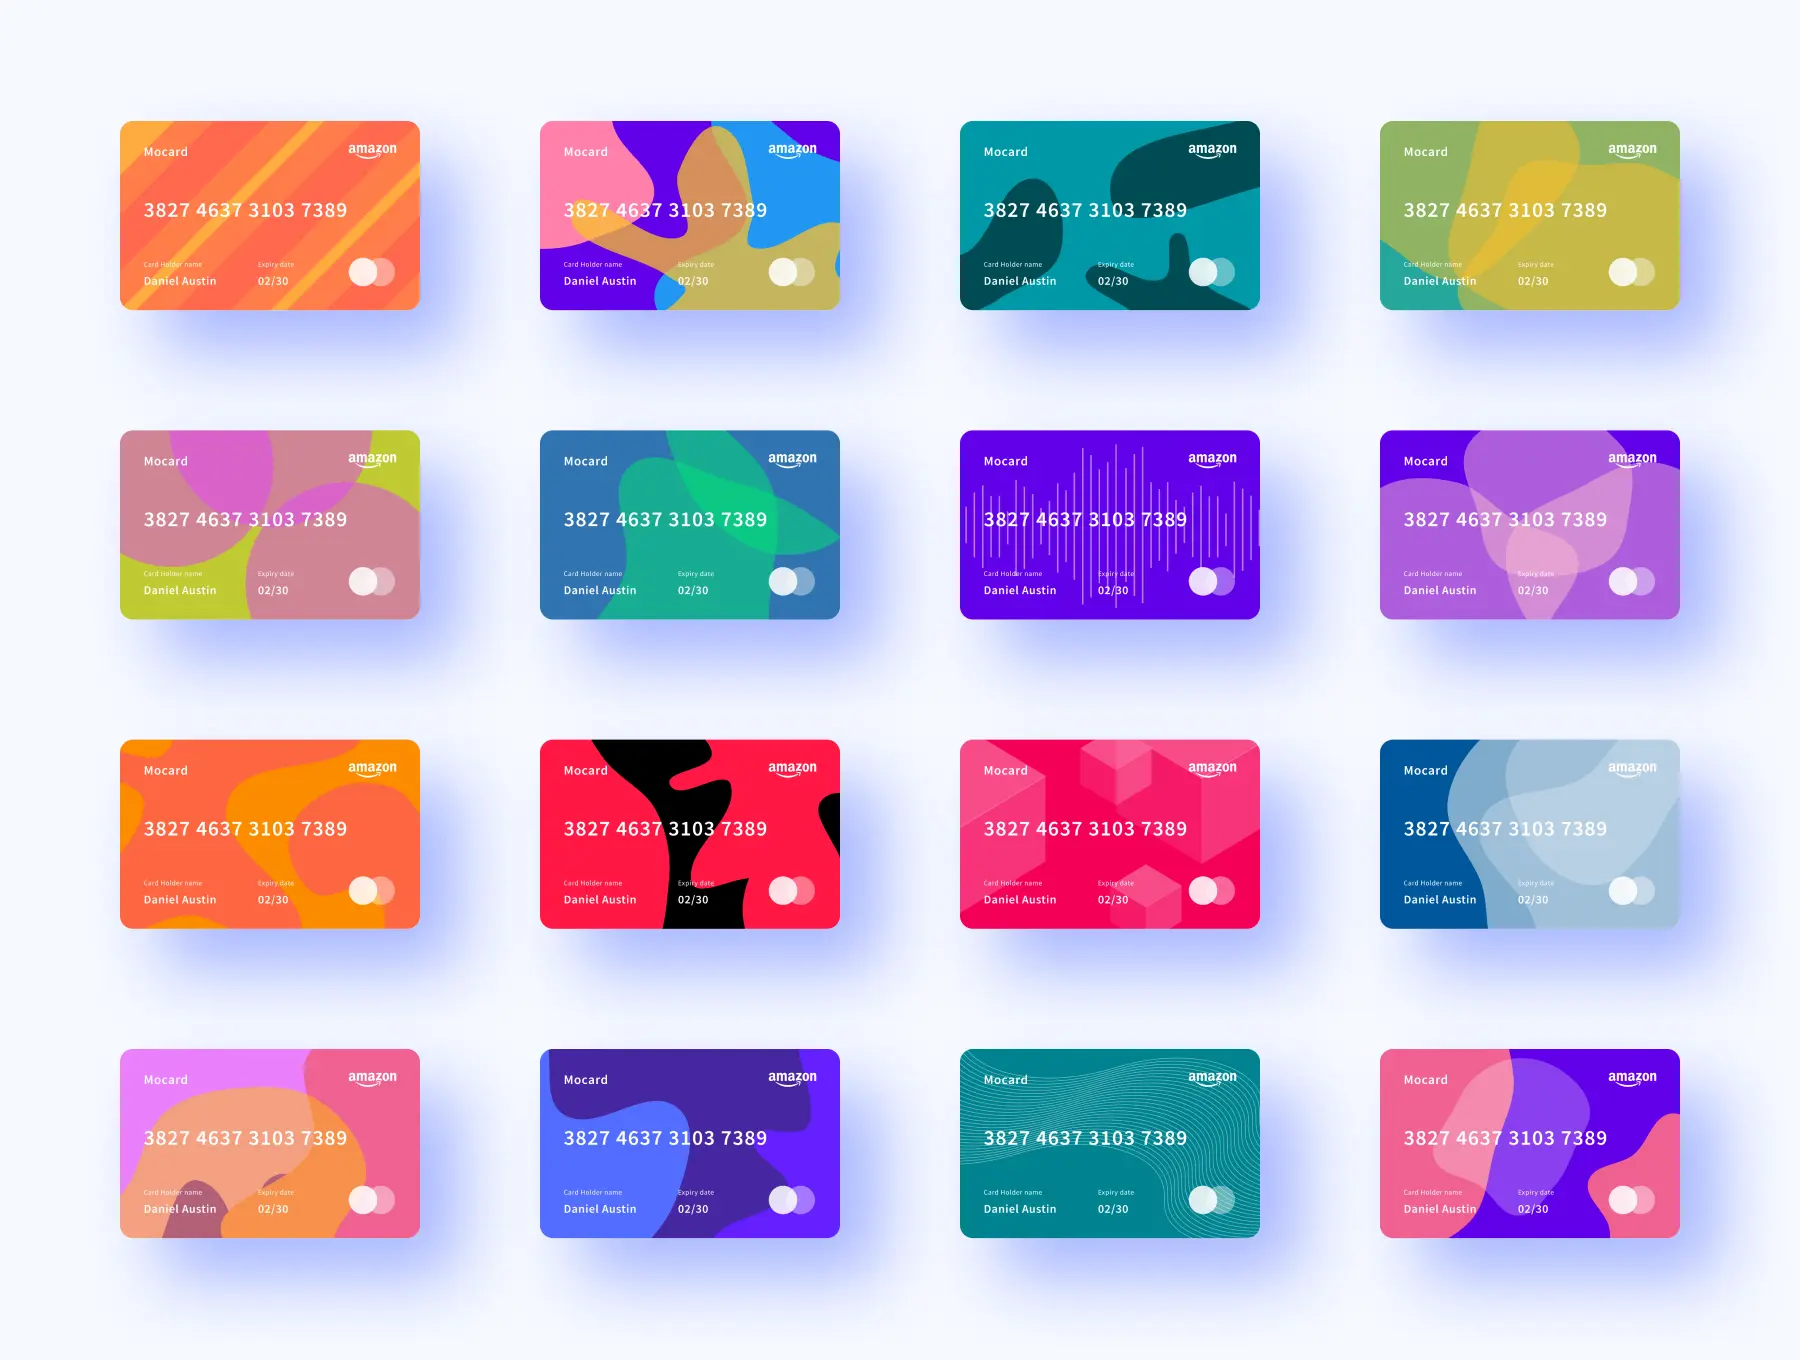 应用程序电子钱包银行卡设计组件下载